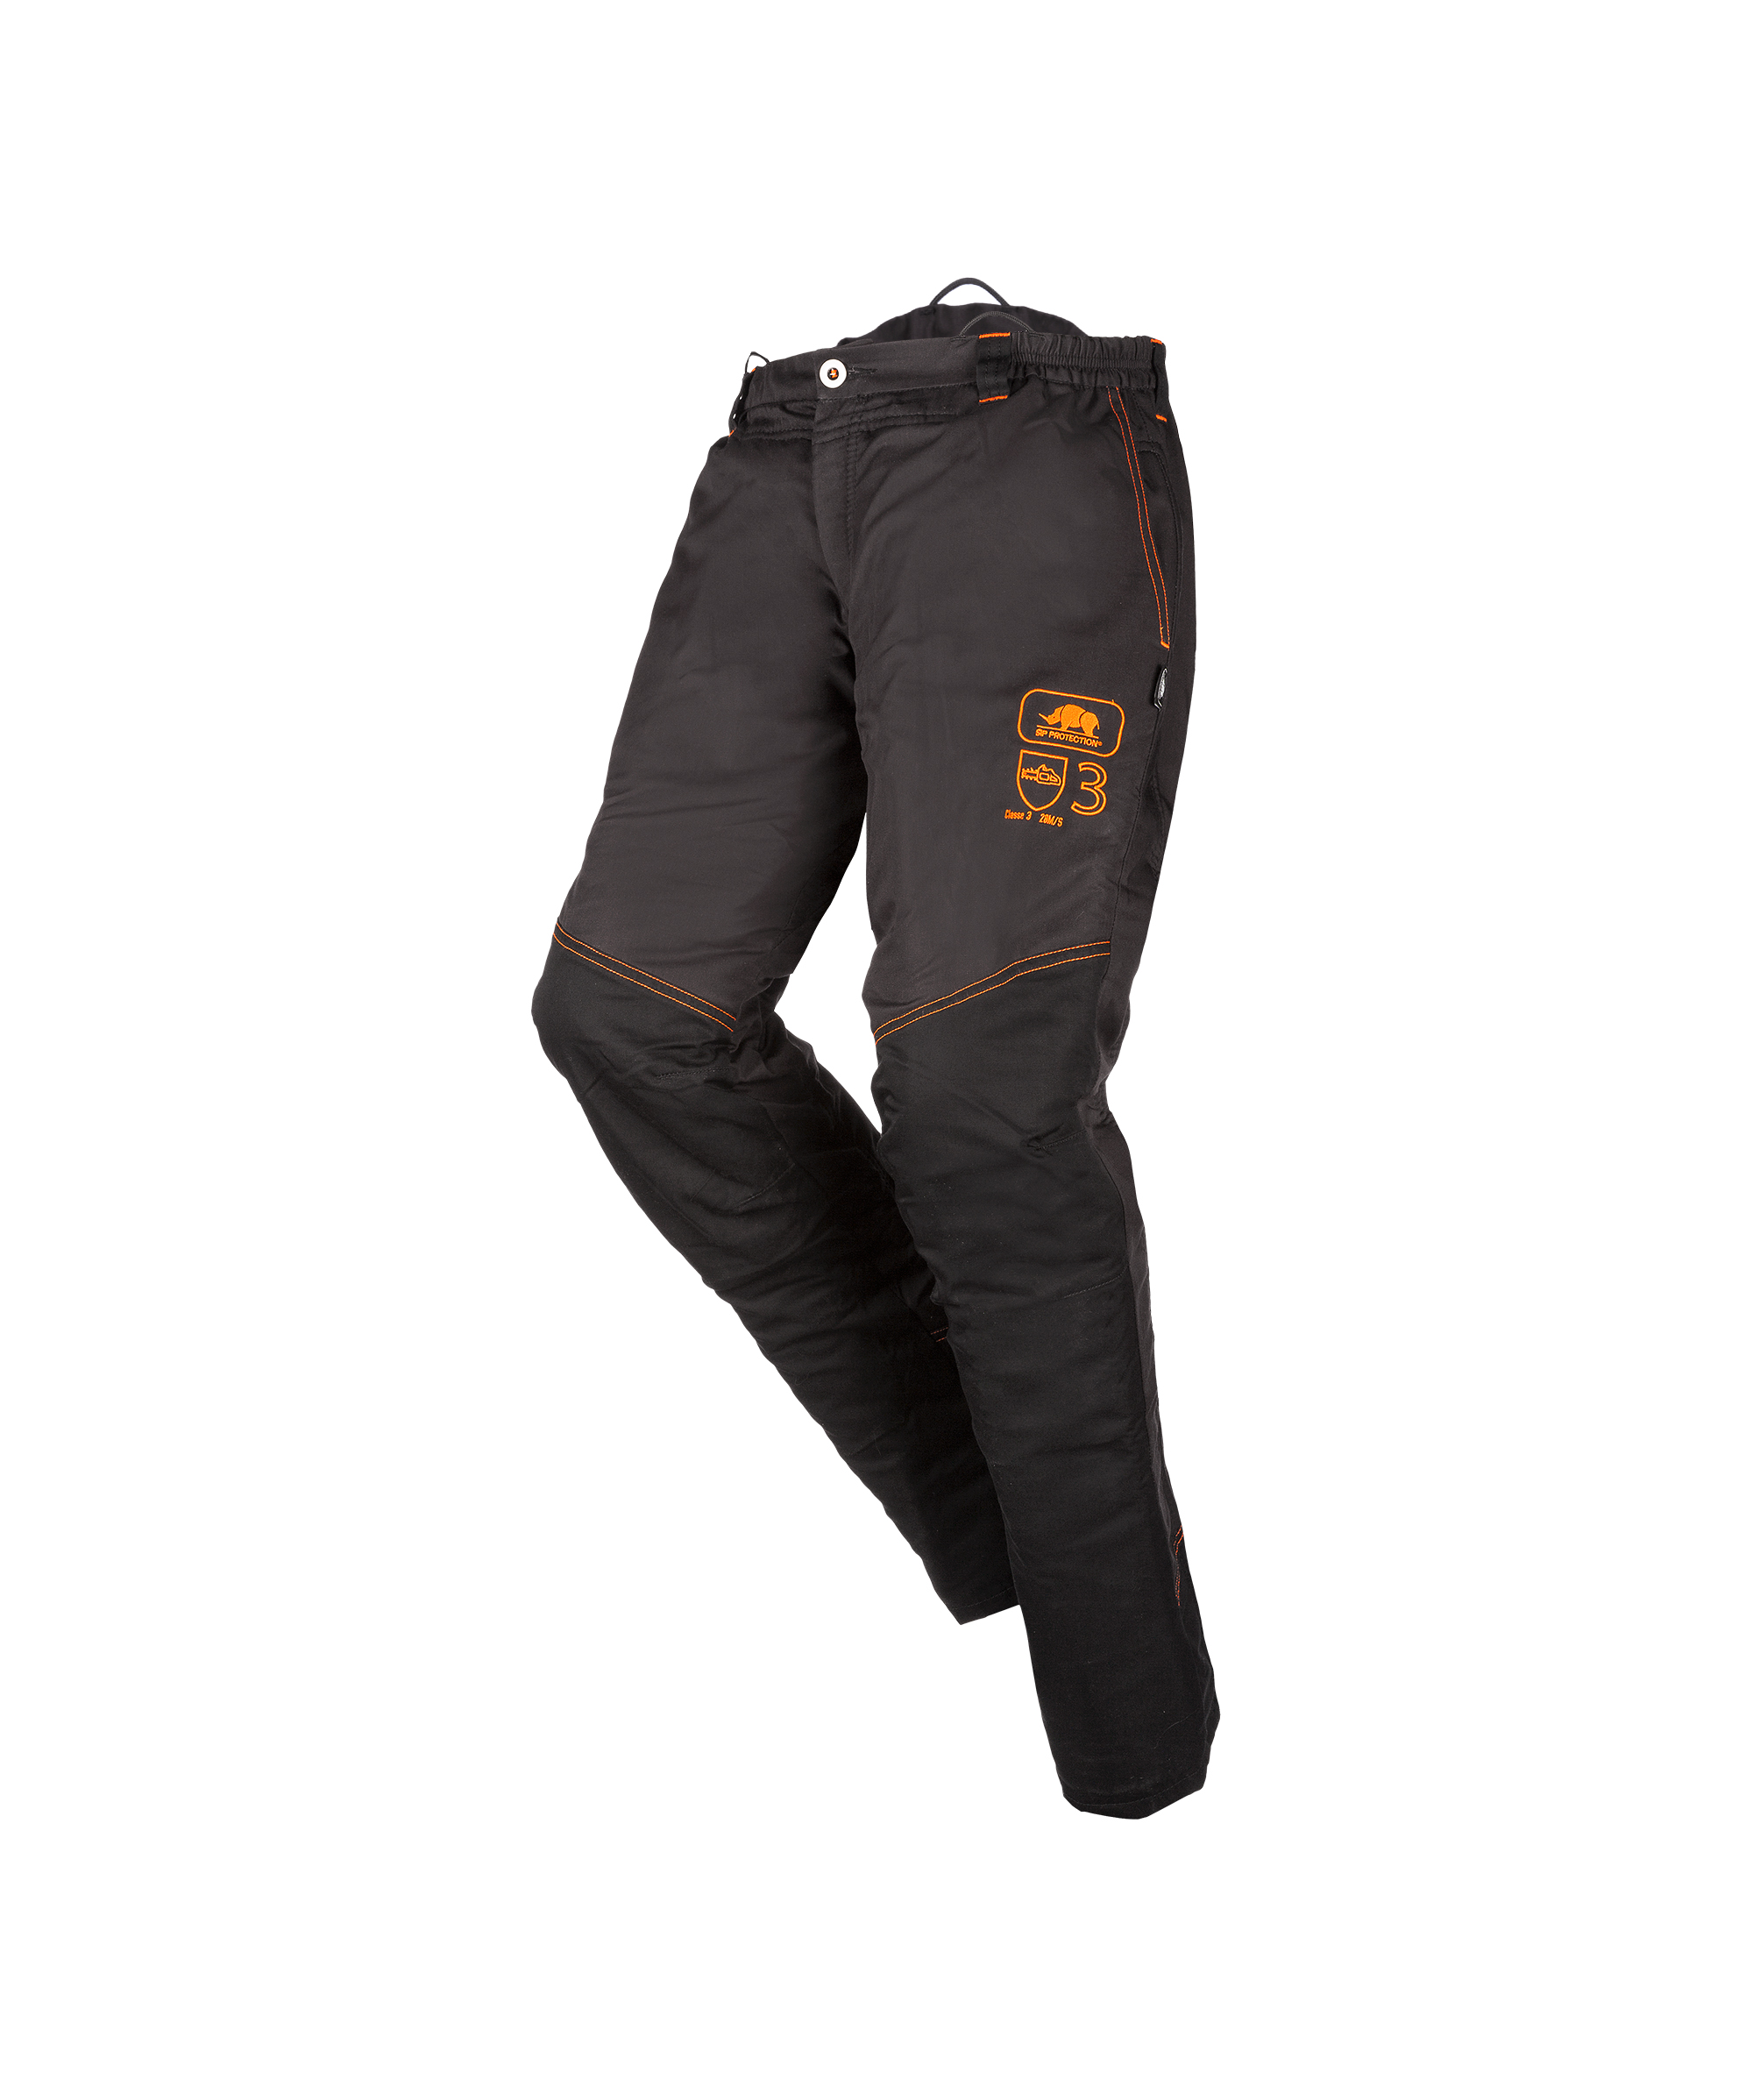 1RP3 - Pantalon de tronçonneuse classe 3 type A